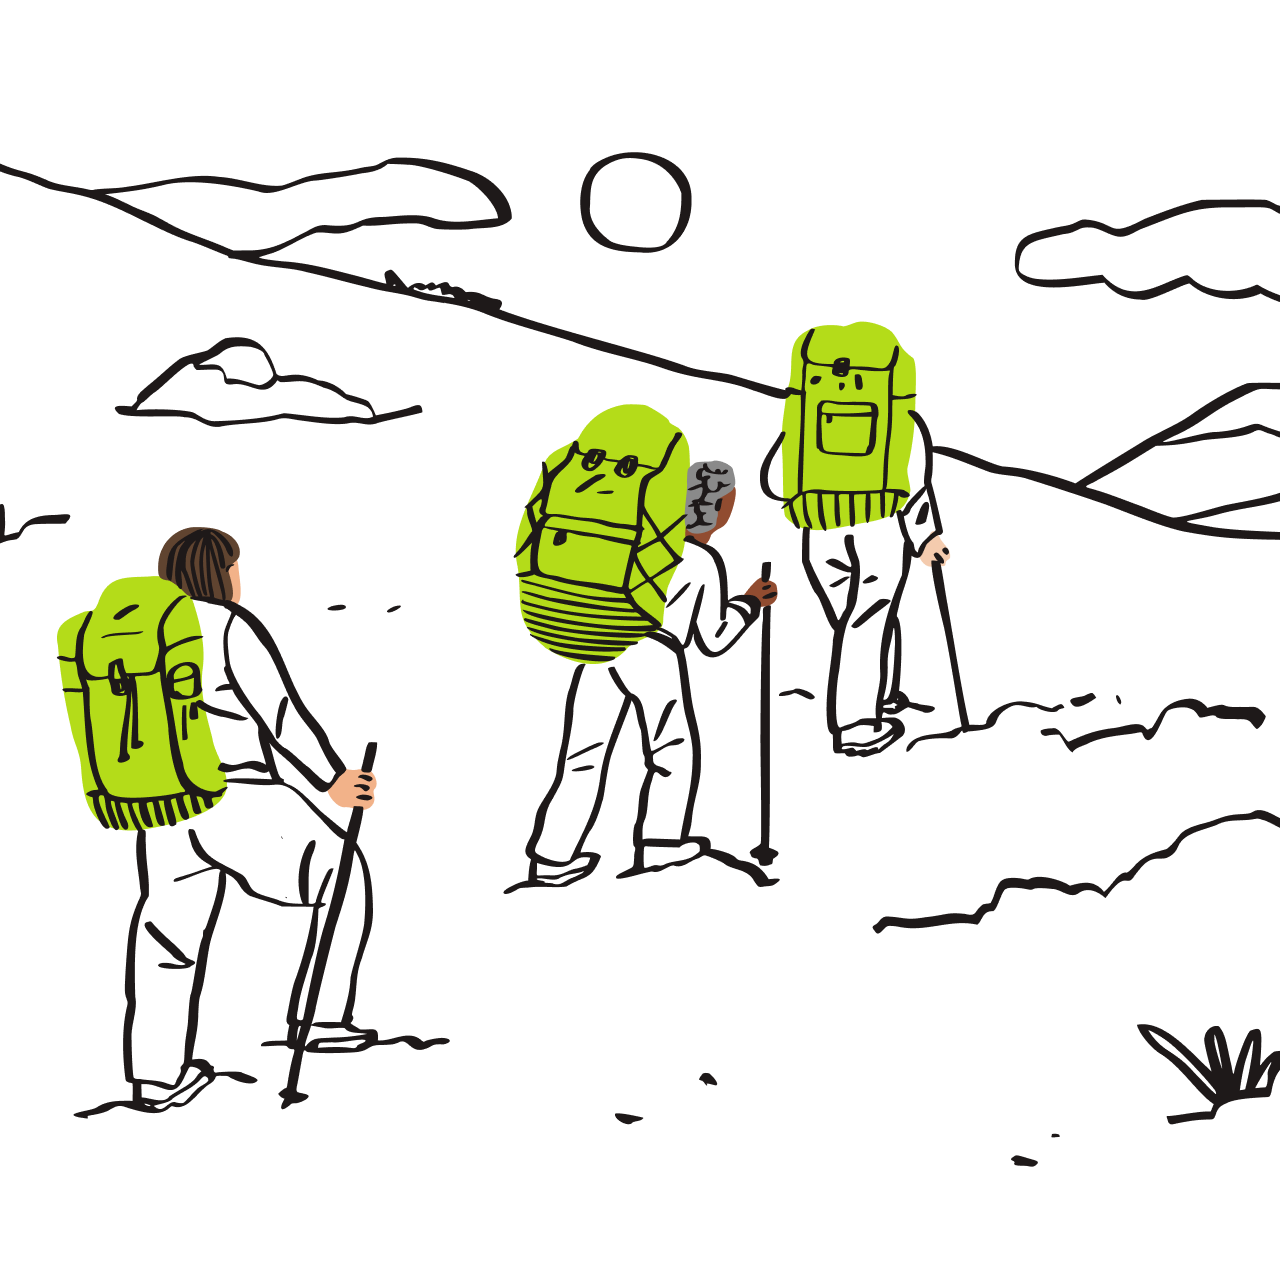 ภาพประกอบนักเดินทางแบ็คแพ็คเกอร์สามคนกำลังเดินขึ้นเขา